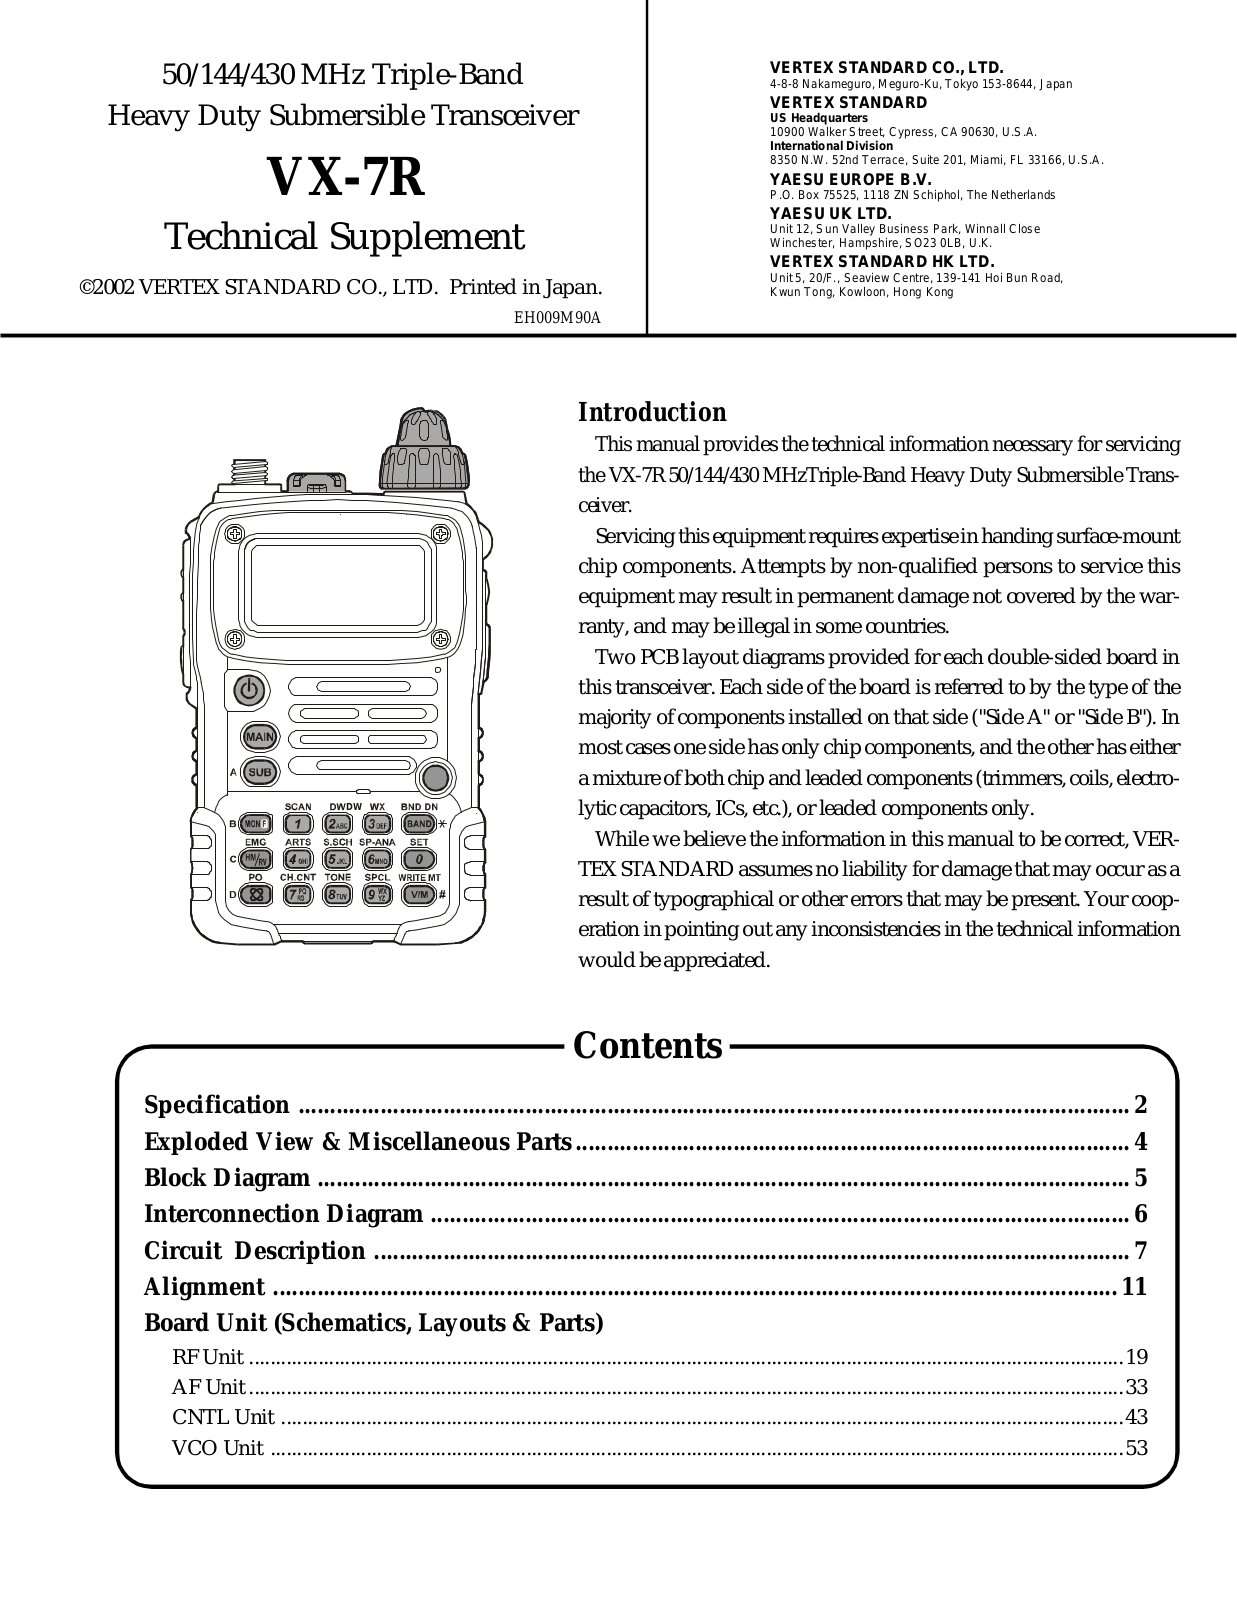 Yaesu VX-7R Service Manual